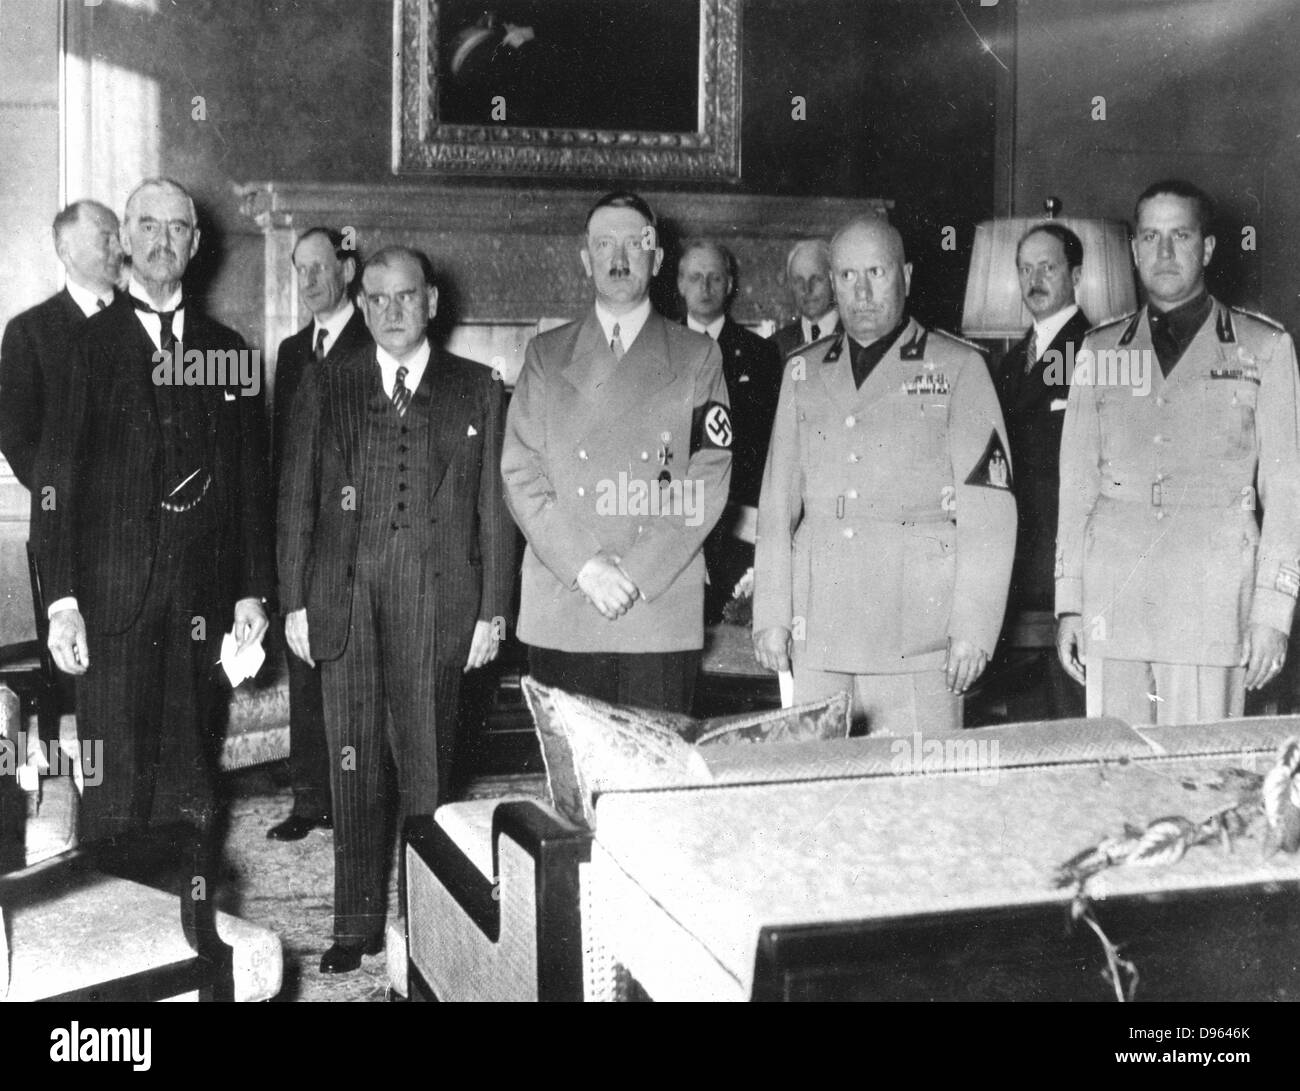 Peace Conference, München, Septemebr 1838: von links nach rechts: Neville Chamberlain (Großbritannien) Edouard Daladier (Frankreich) Adolf Hitler (Deutschland) Benito Mussolini (Italien) und Graf Ciano (Italien) Stockfoto